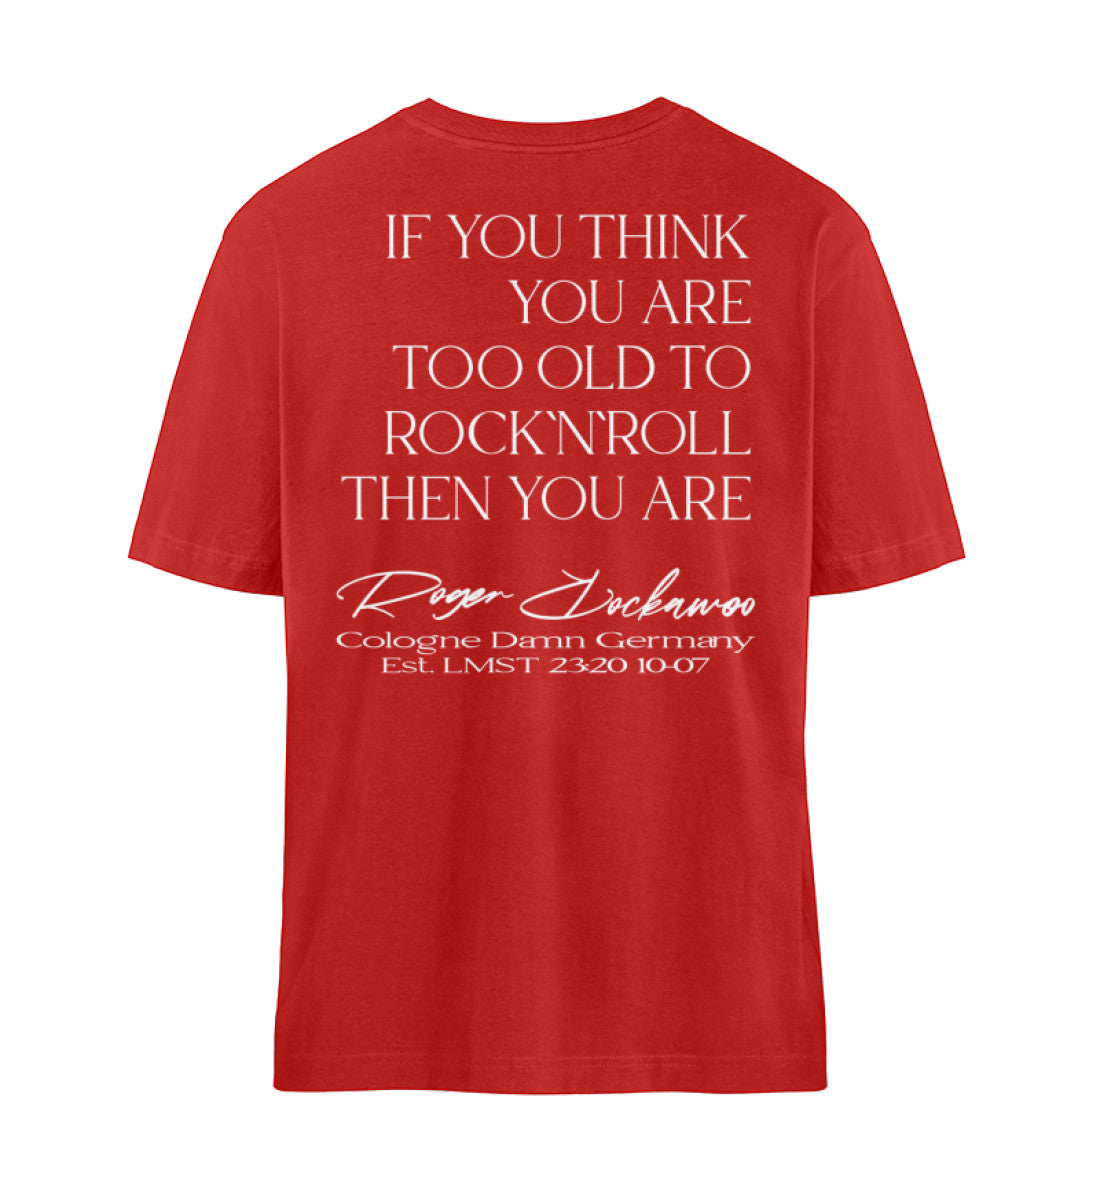 Rotes T-Shirt Unisex Relaxed Fit für Frauen und Männer bedruckt mit dem Design der Roger Rockawoo Kollektion Guitar too old to rocknroll